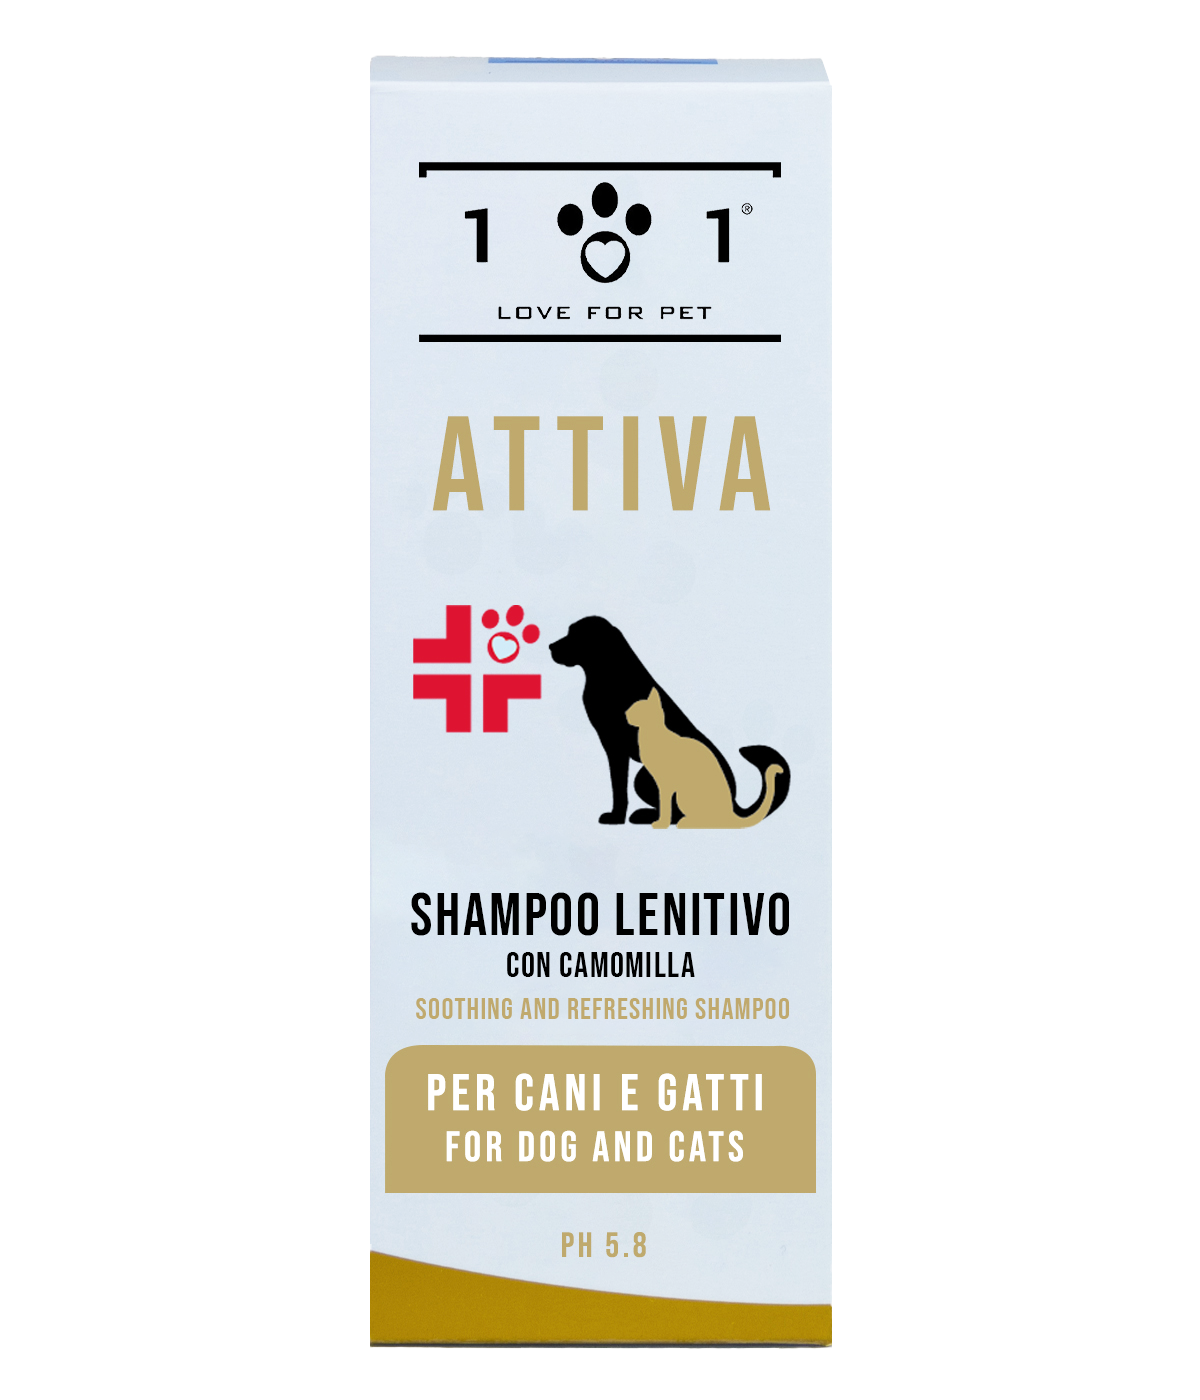 Shampoo Lenitivo Antiprurito per Cani e Gatti